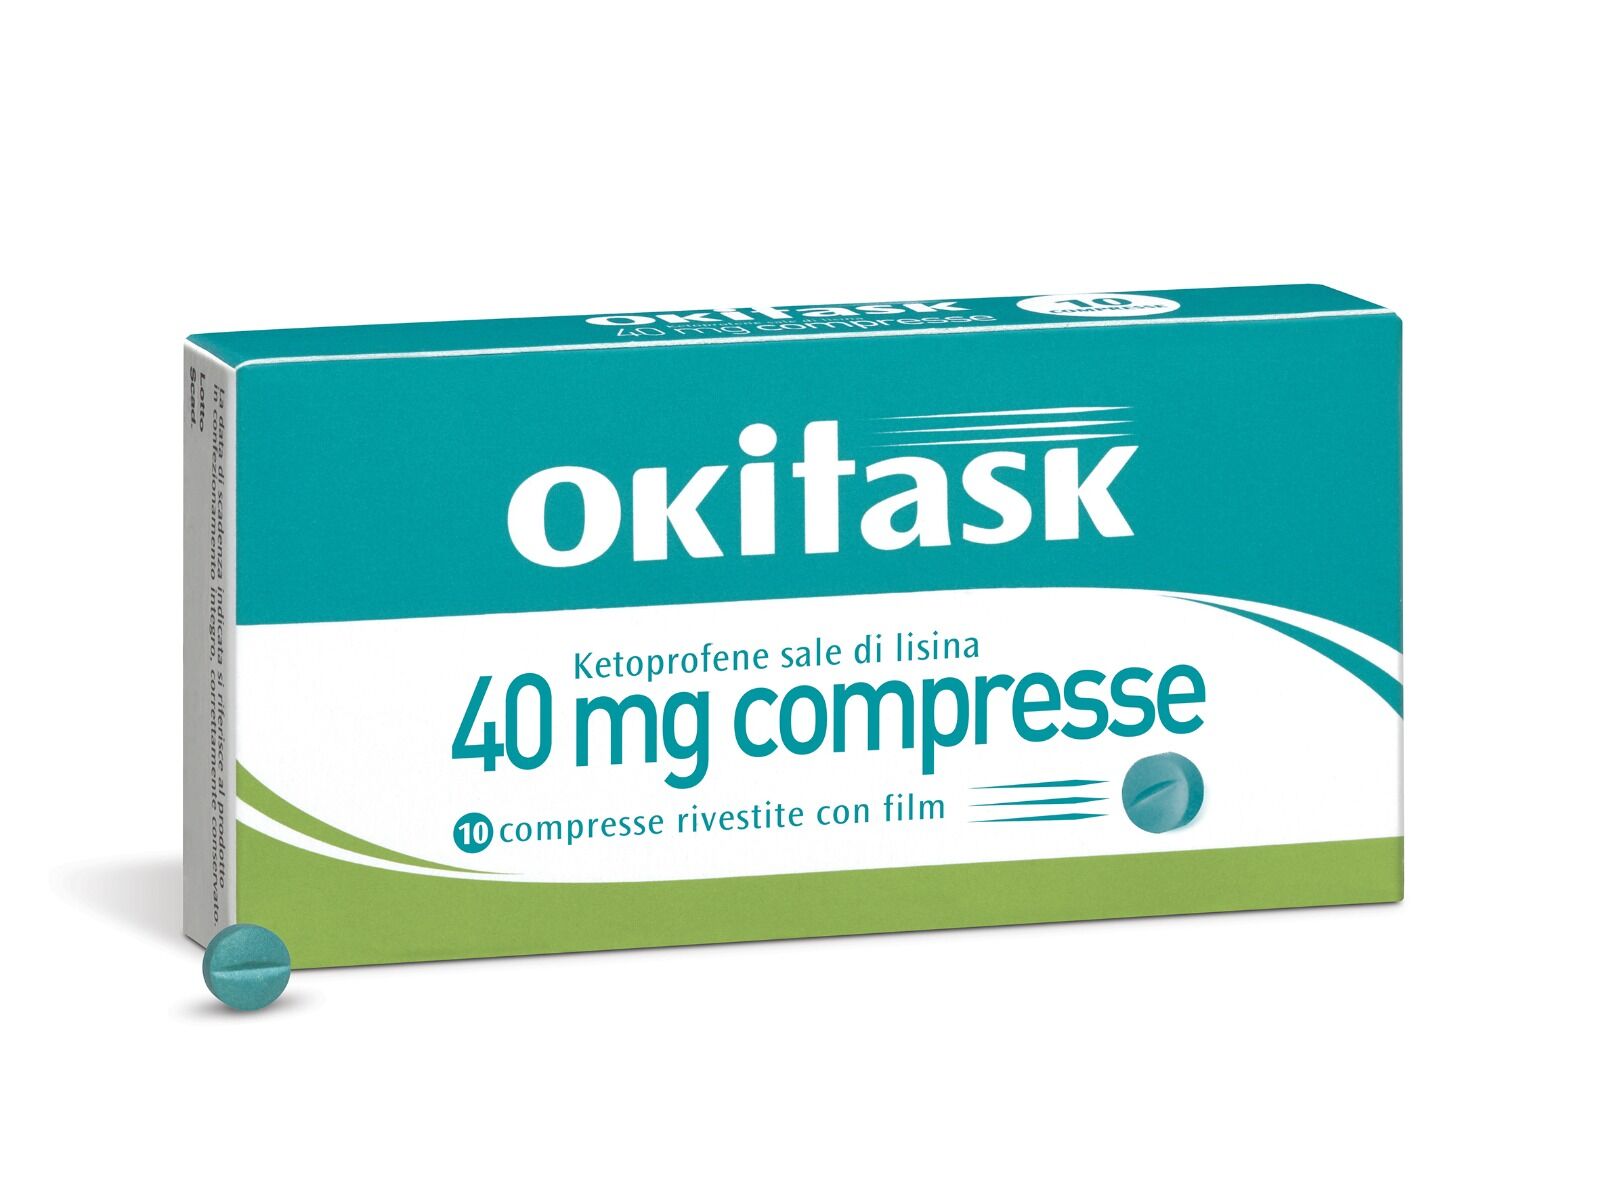 Oki task 40 mg 10 Compresse Rivestite